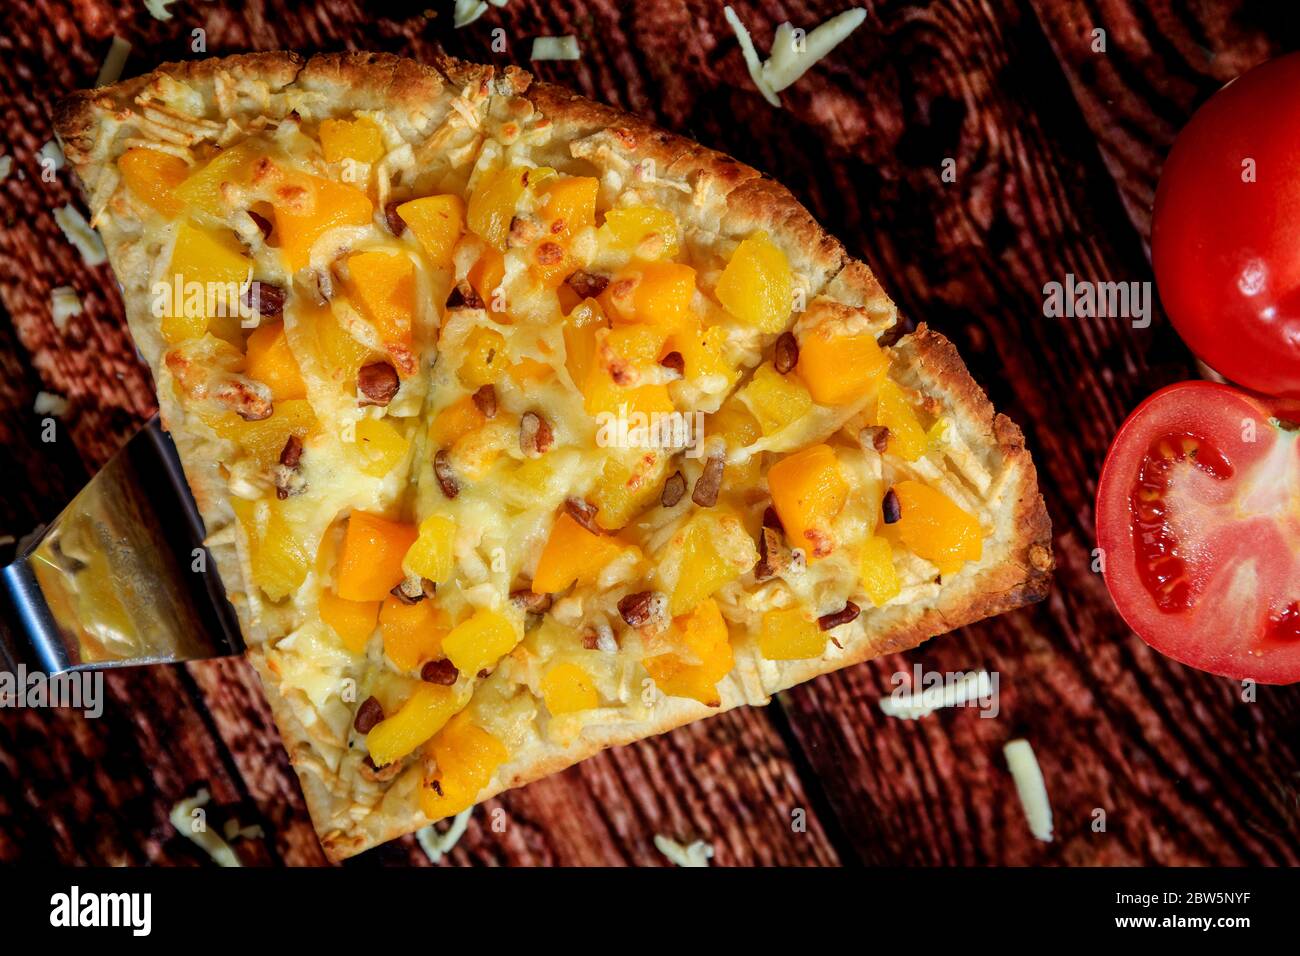 Vue de près et de dessus d'une pizza spéciale avec mangue et ananas, accompagnée d'une saucisse chaude sur une table en bois Banque D'Images